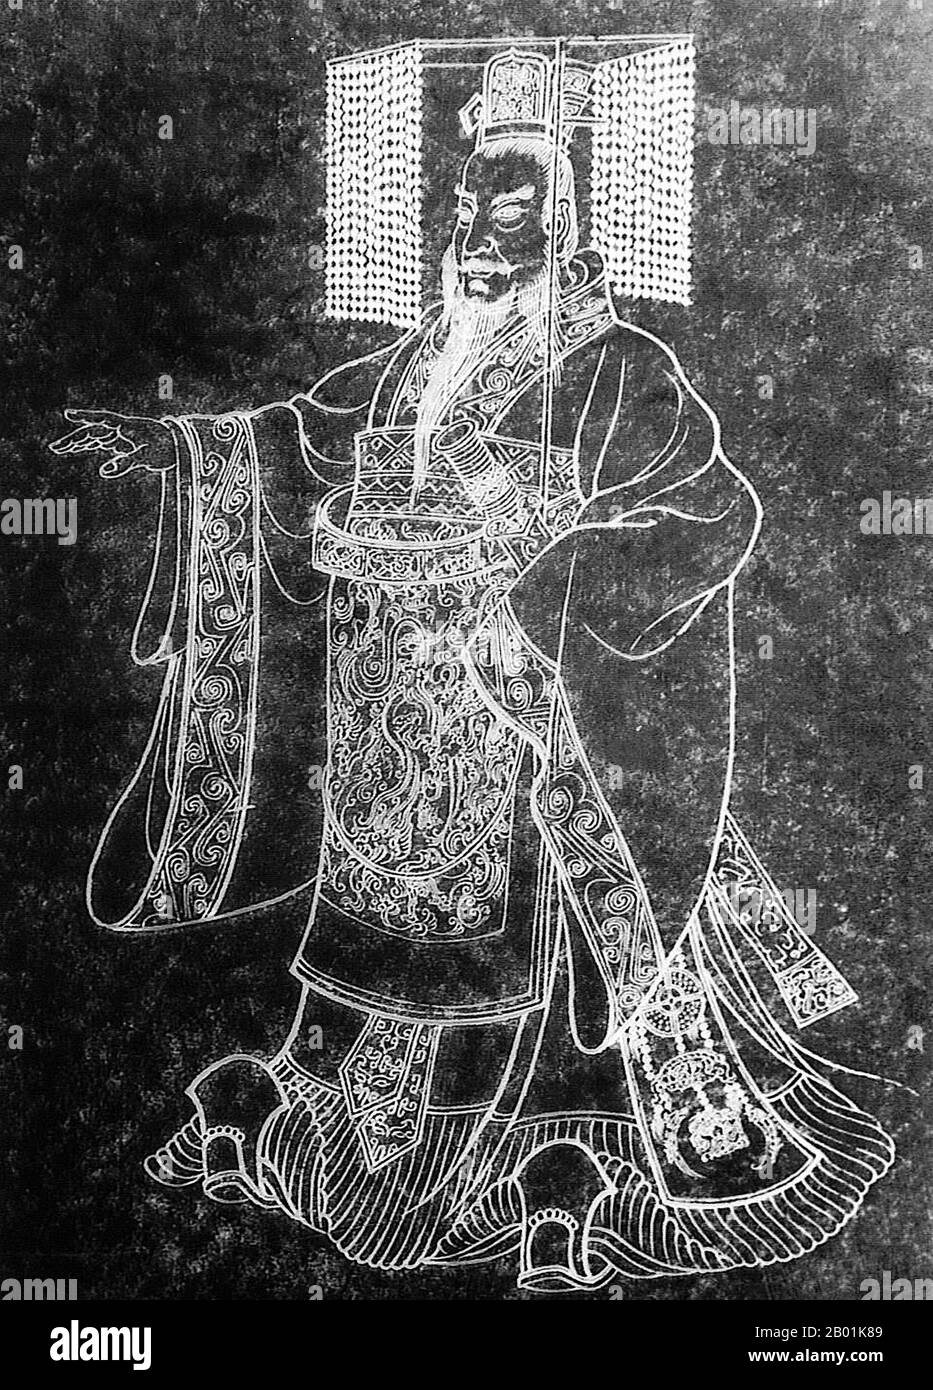 Chine : Qin Shu Huang / Qin Shi Huangdi (259-210 av. J.-C.), Premier empereur d'une Chine unifiée. Frottement de l'encre d'une tablette de pierre, c. 18e siècle. Qin Shi Huang, nom personnel Ying Zheng, était roi de l'État chinois de Qin de 246 à 221 av. J.-C. pendant la période des États combattants. Il devint le premier empereur d'une Chine unifiée en 221 av. J.-C., et régna jusqu'à sa mort en 210 av. J.-C. à l'âge de 49 ans. Se faisant appeler « Premier empereur » après l'unification de la Chine, Qin Shi Huang est une figure centrale de l'histoire chinoise, inaugurant près de deux millénaires de domination impériale. Banque D'Images